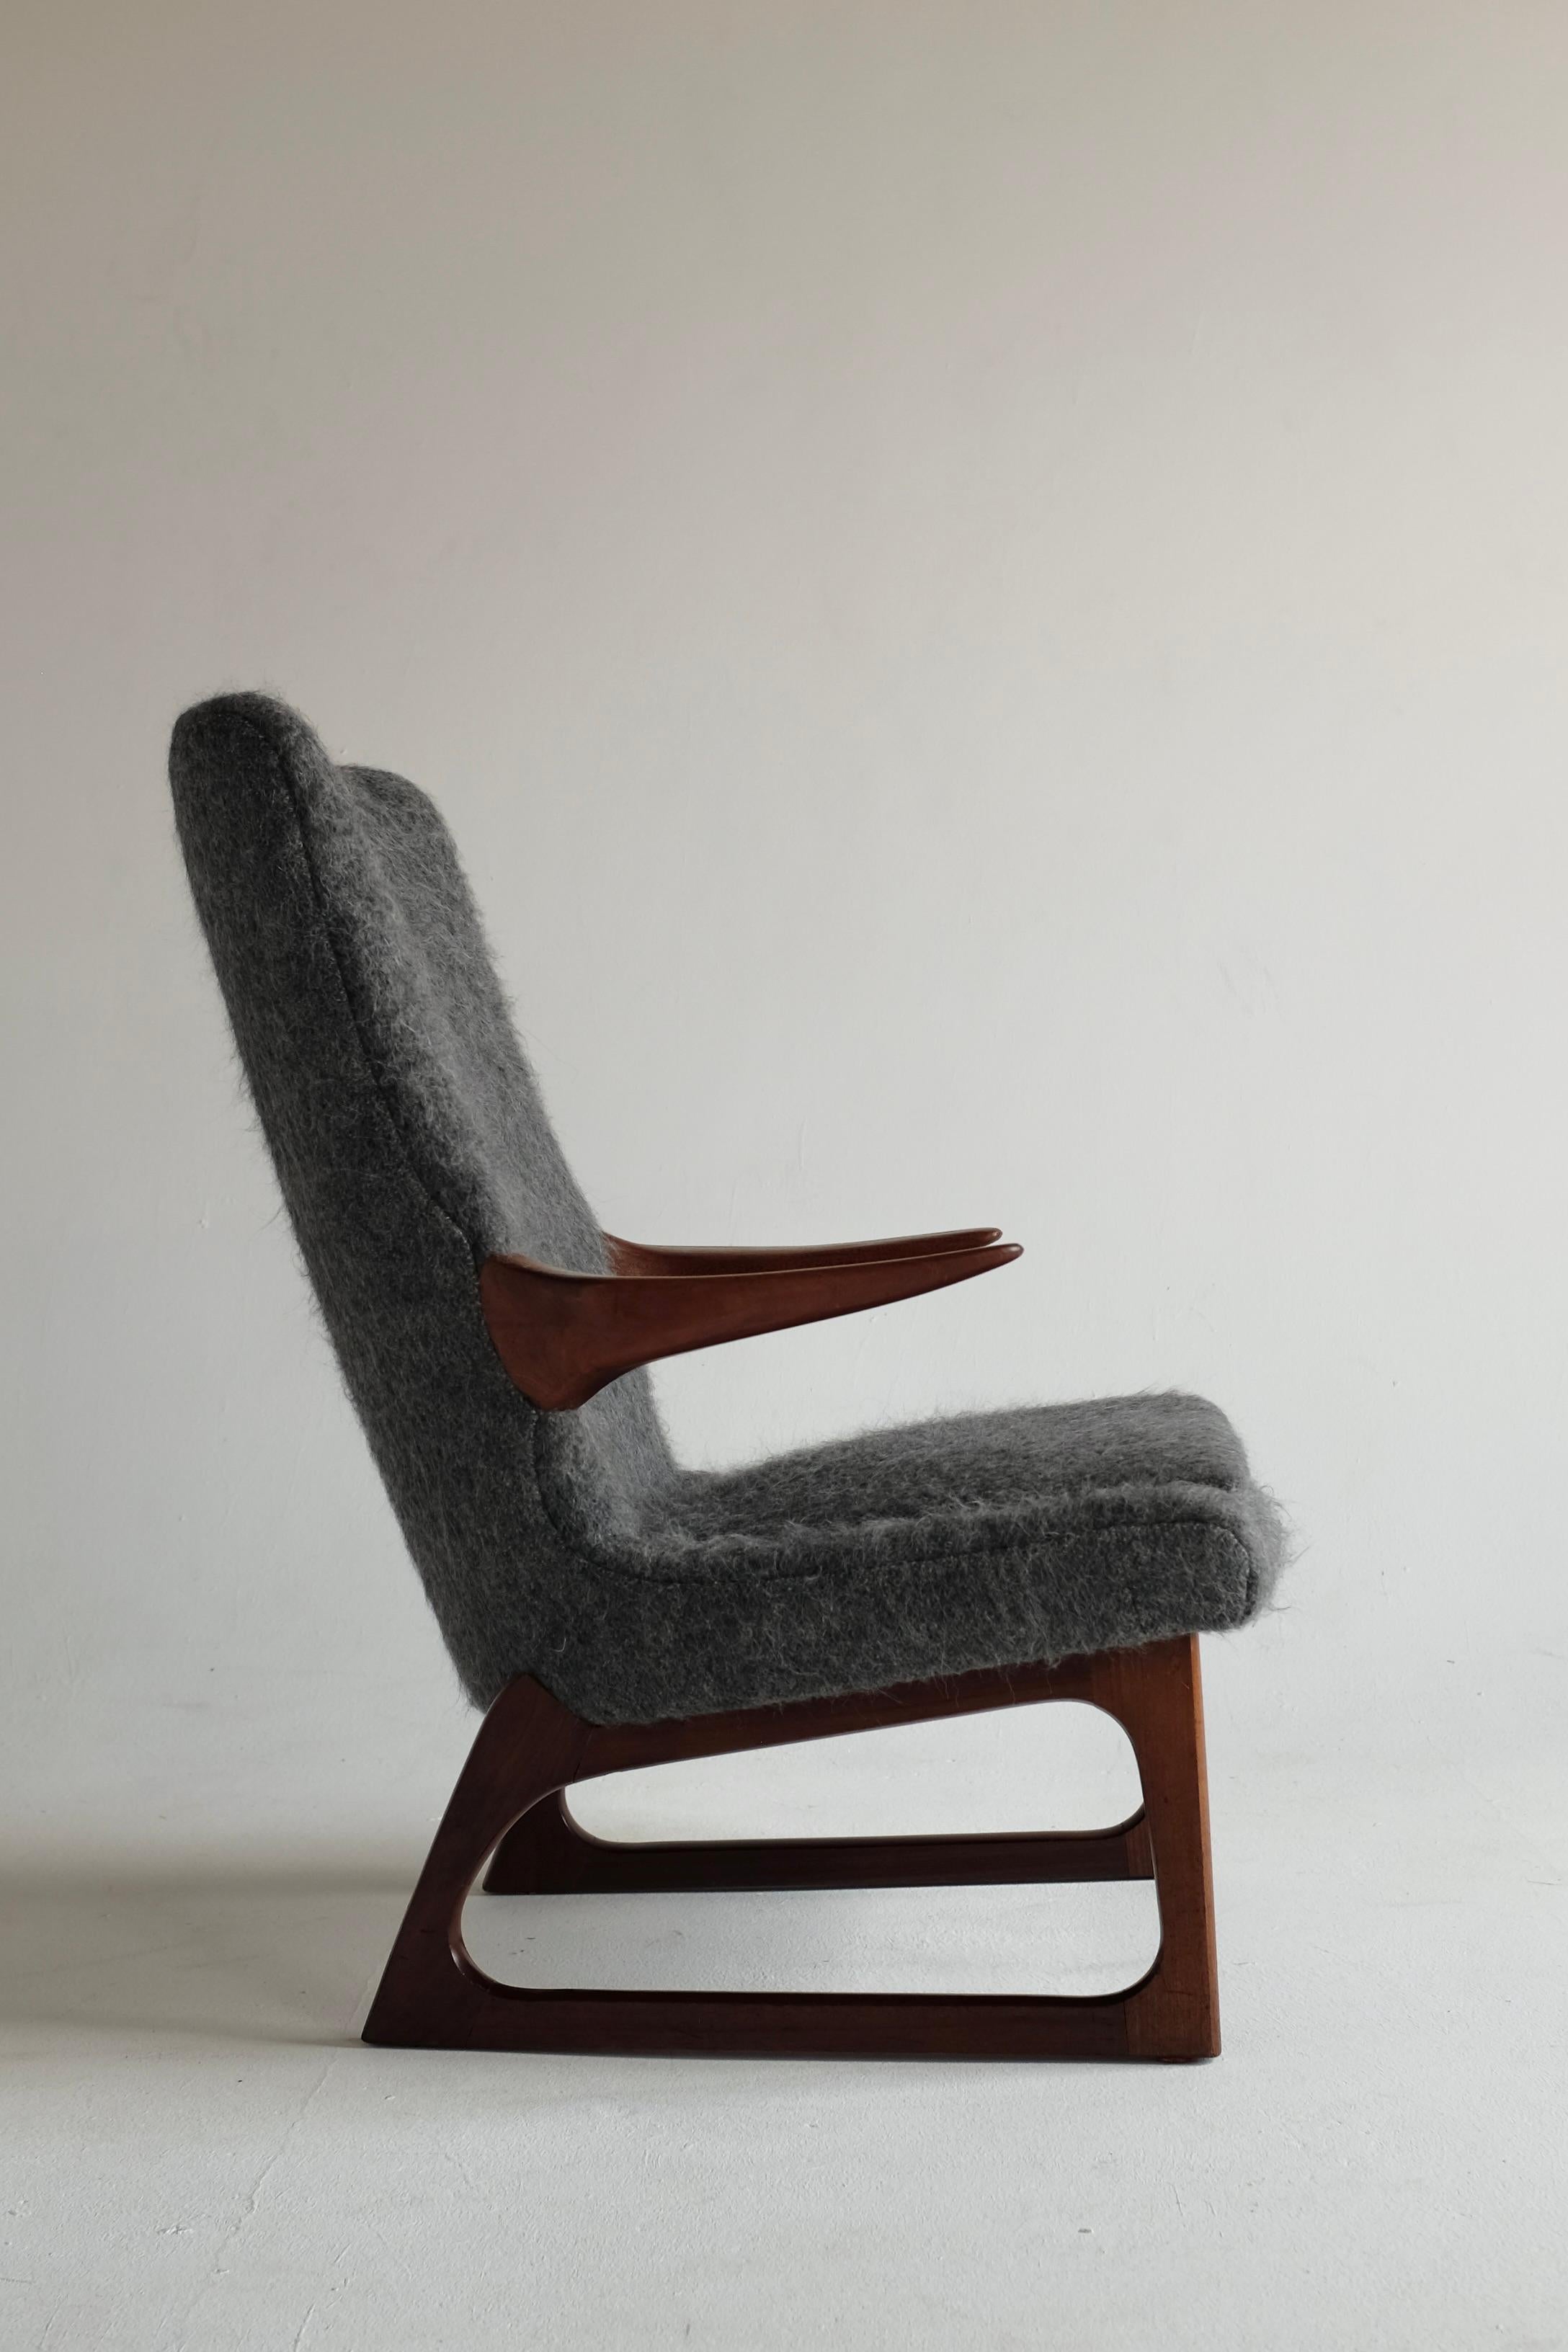 Superbe fauteuil Mid-Century des années 1960 par Fredrik A. Kayser pour Vatne, Norvège. La chaise possède de magnifiques accoudoirs et pieds en teck sculpté qui rappellent le style scandinave du milieu du siècle à l'époque. Fredrik A. Kayser était